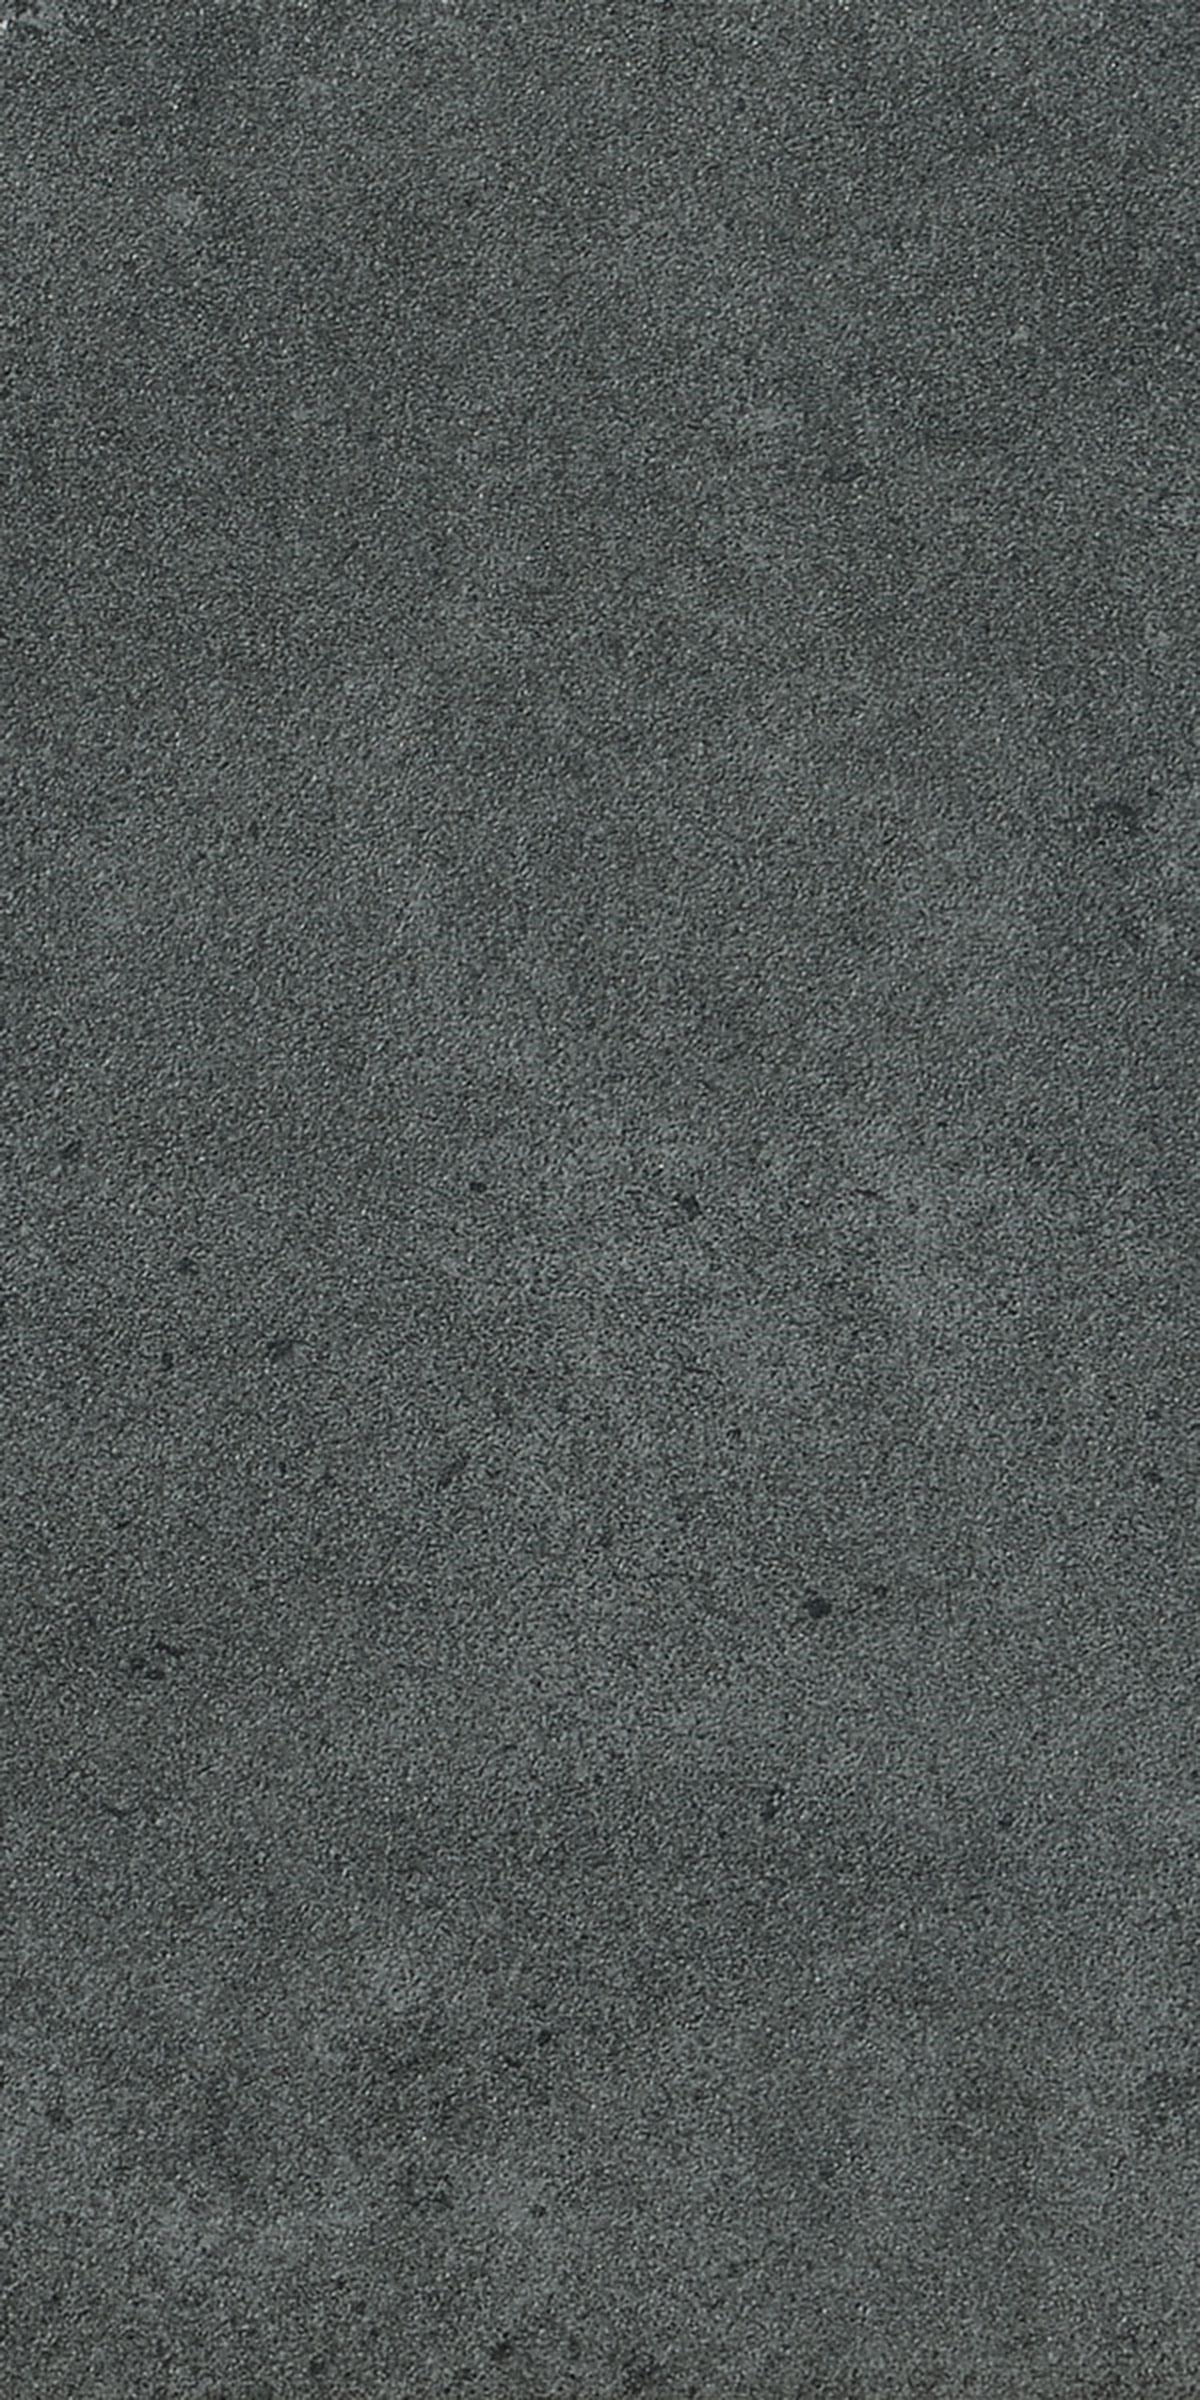 Surface Ash Natural – 300×600